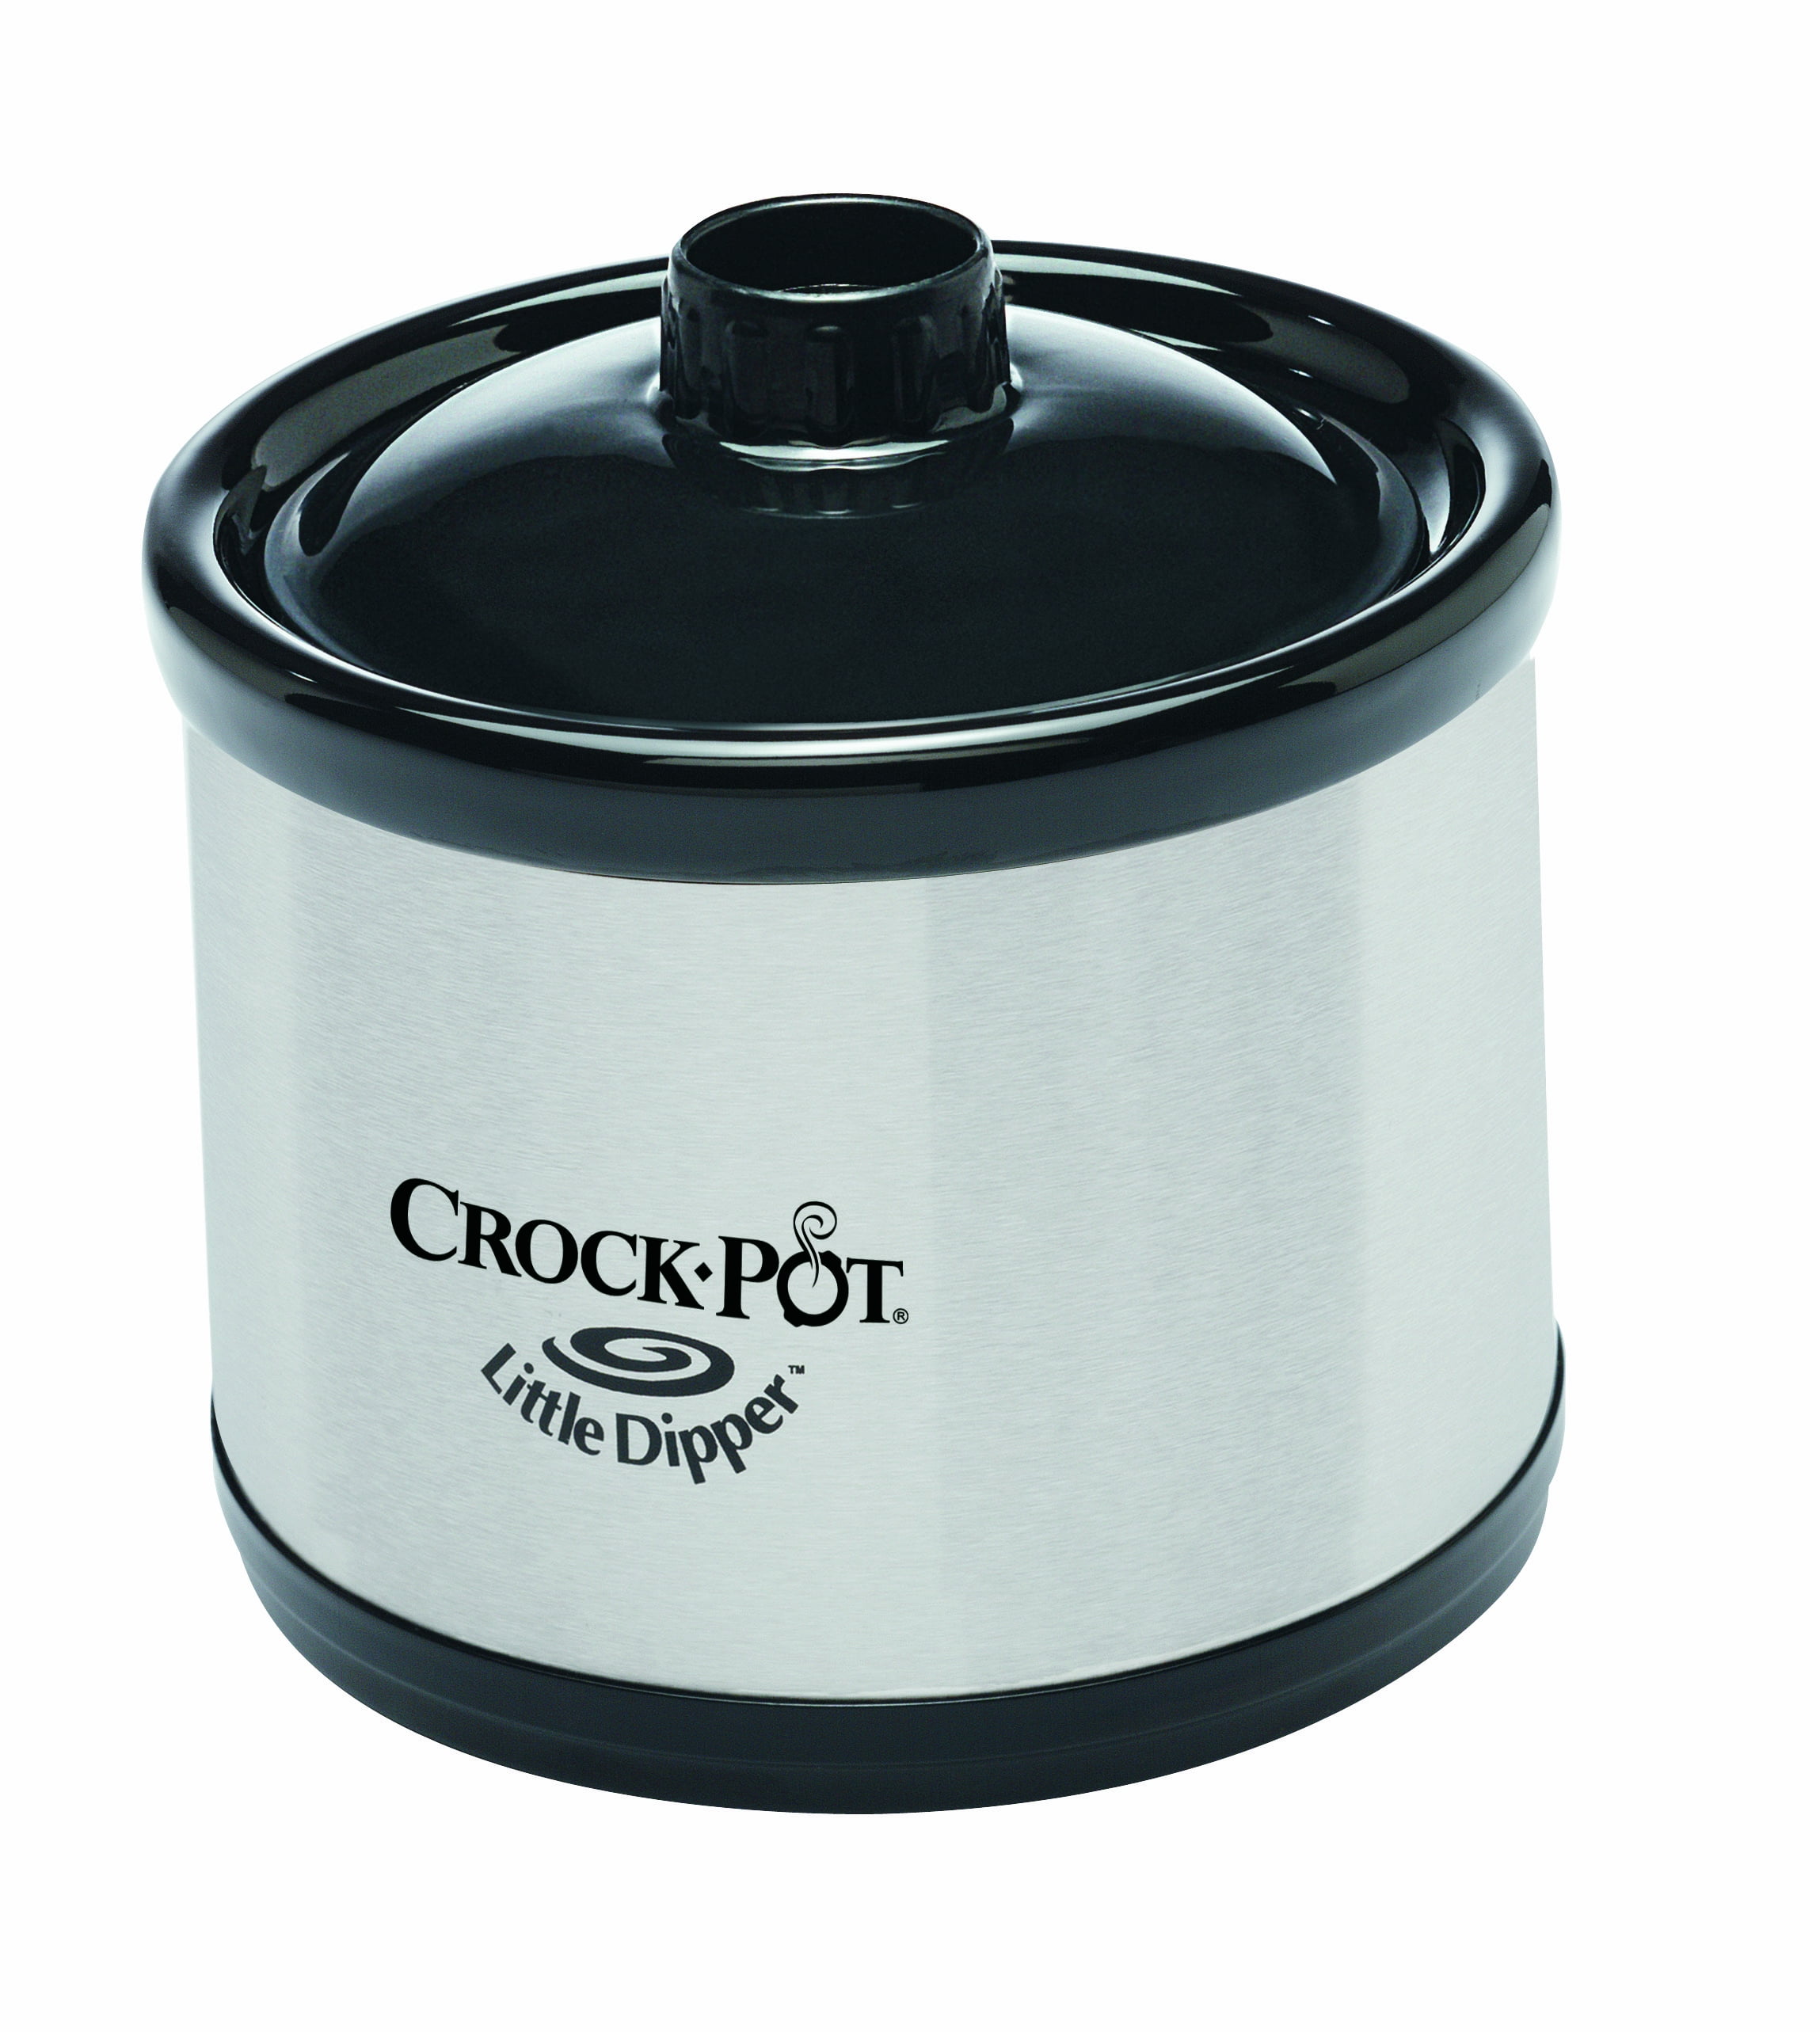 Crock-Pot Little Dipper Mini Slow Cooker Stainless Black No Lid Dip Pot 1  Qt.